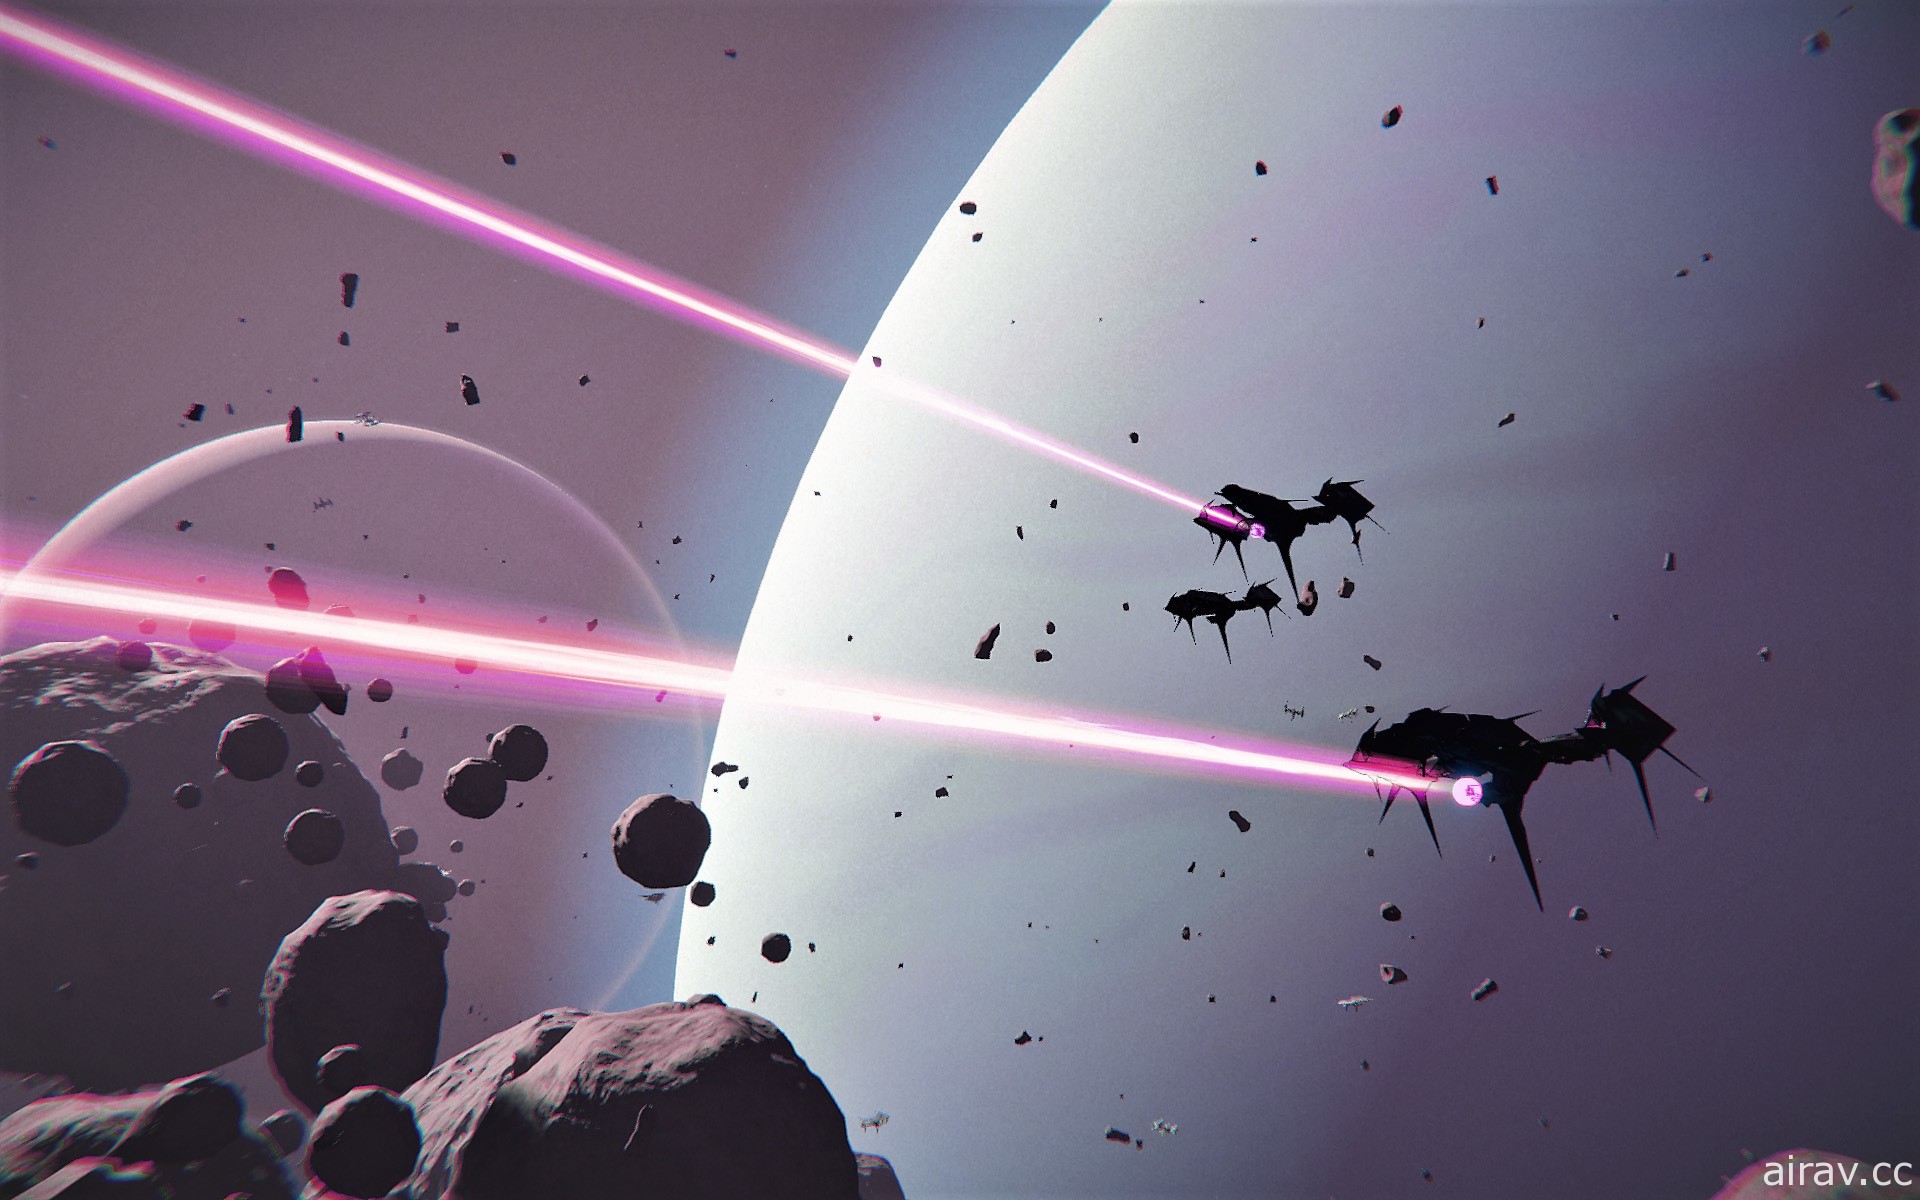 科幻 MMO《無限艦隊 Infinite Fleet》在歐美展開 Alpha 封測 預告本週將揭露中文預告影片